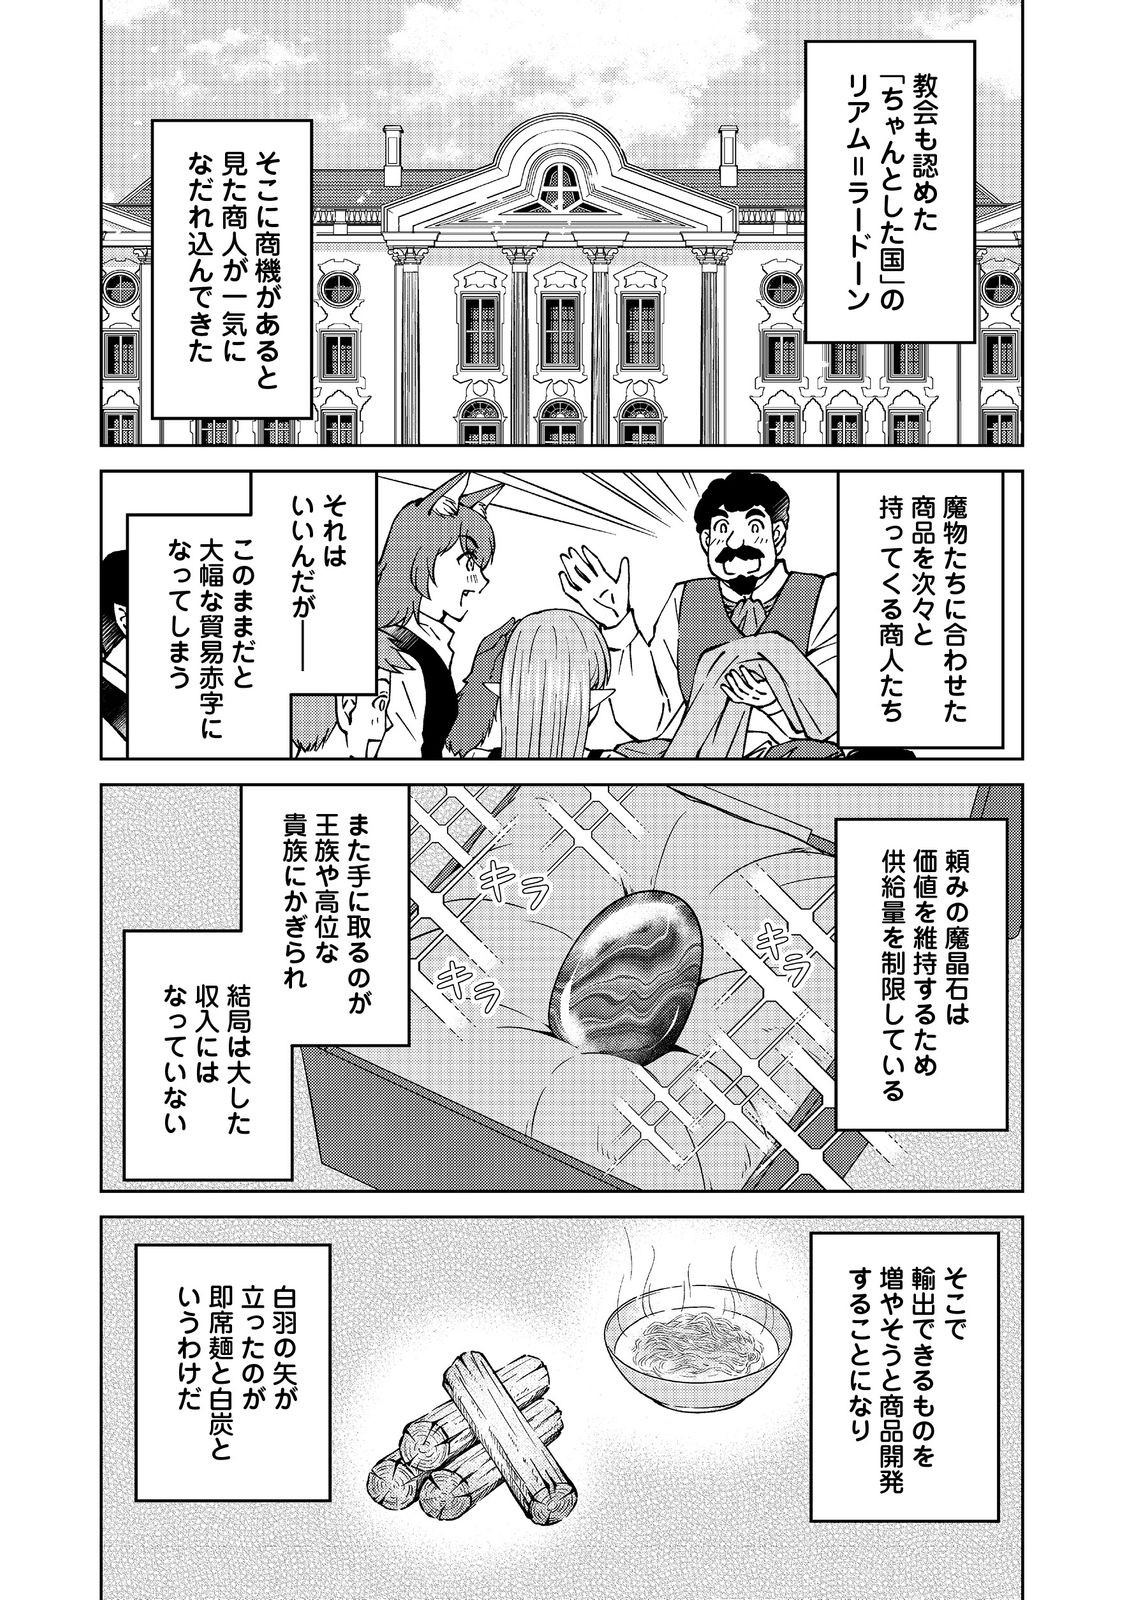 Botsuraku Yotei no Kizoku dakedo, Hima datta kara Mahou wo Kiwamete Mita - Chapter 40 - Page 3